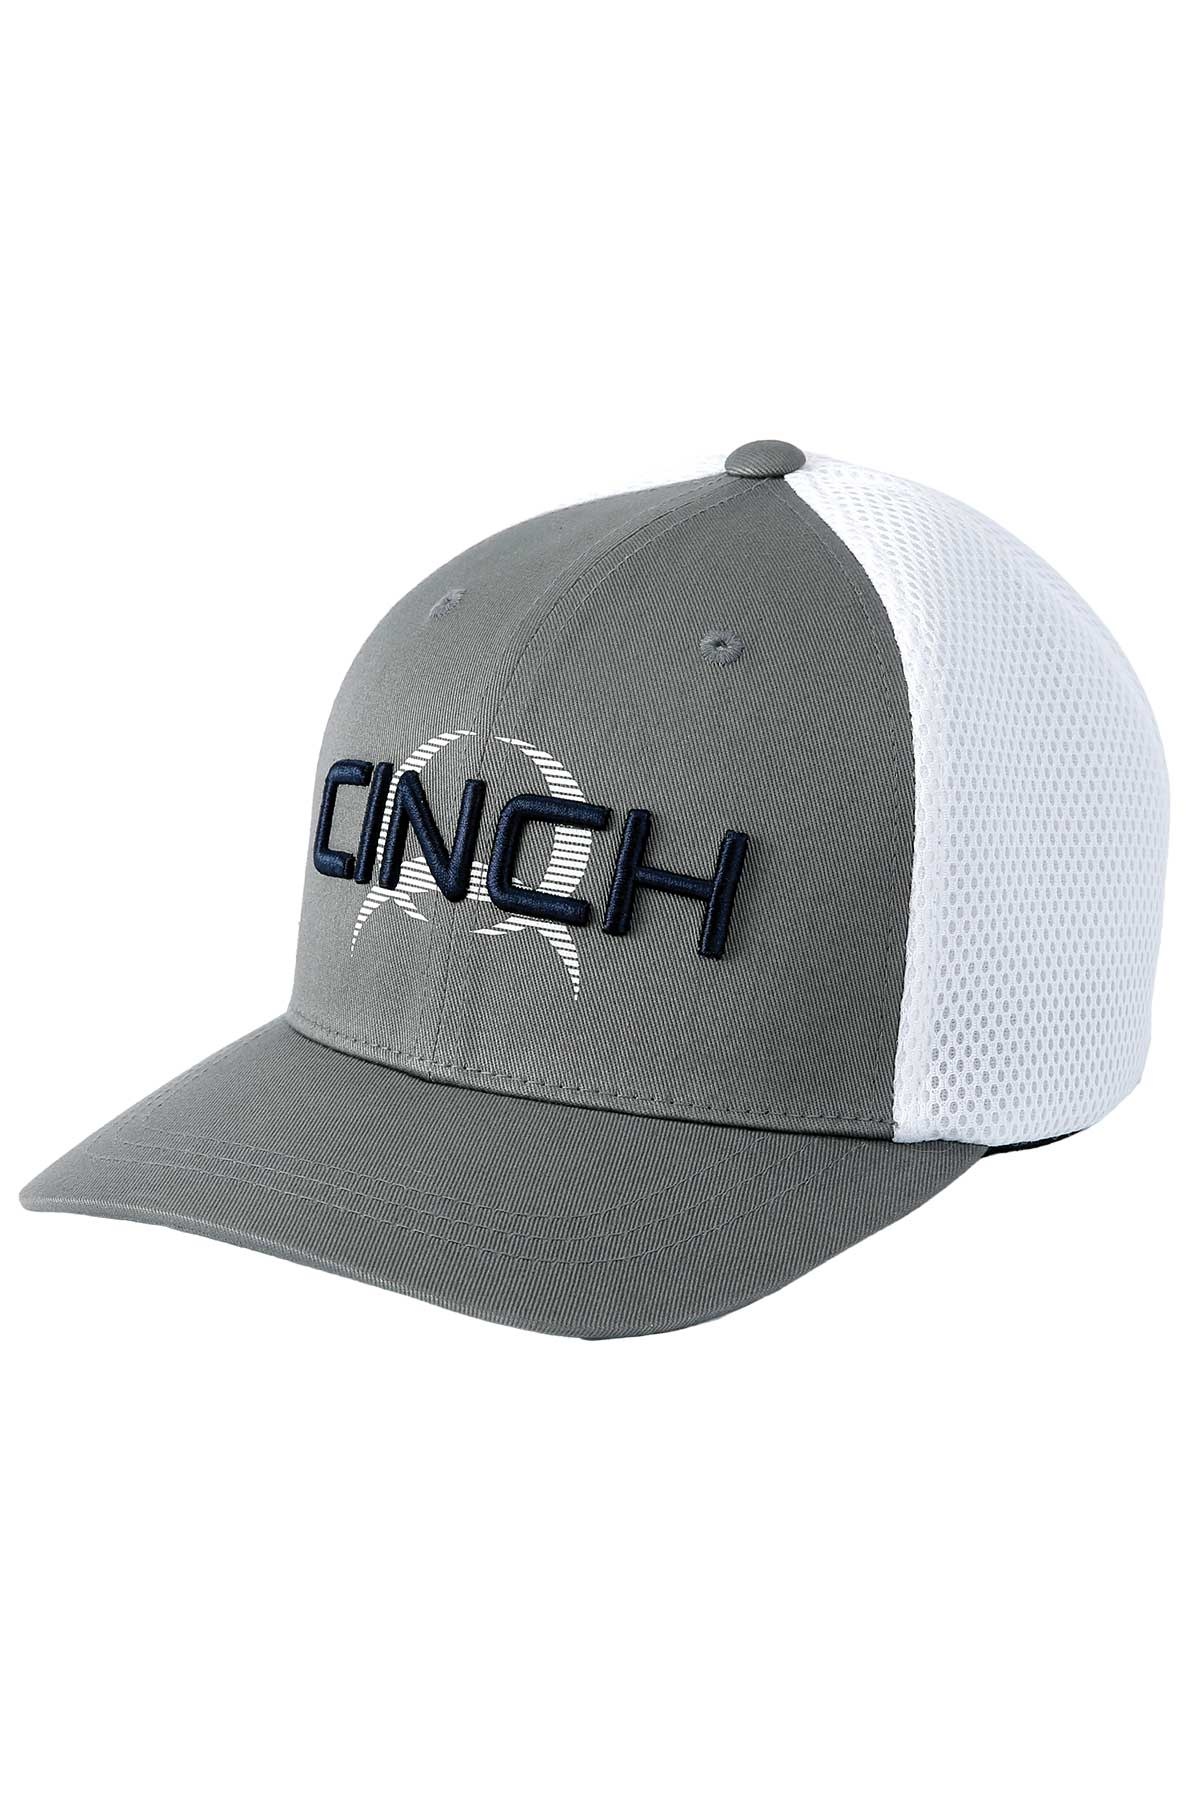 CINCH GRAY FLEXFIT CAP MCC0653311 - Wear Western Corral